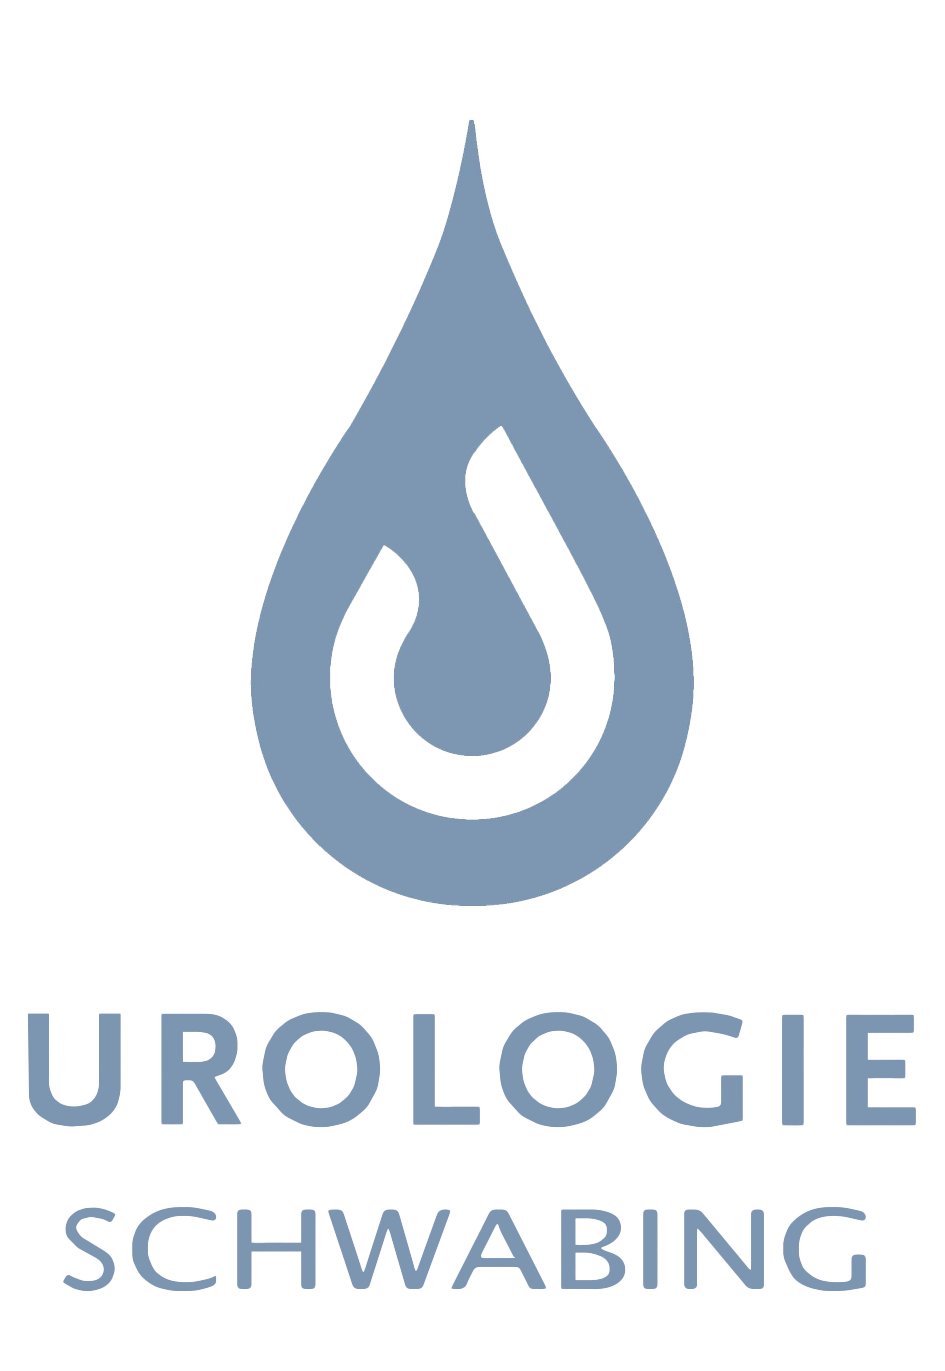 Urologie Schwabing